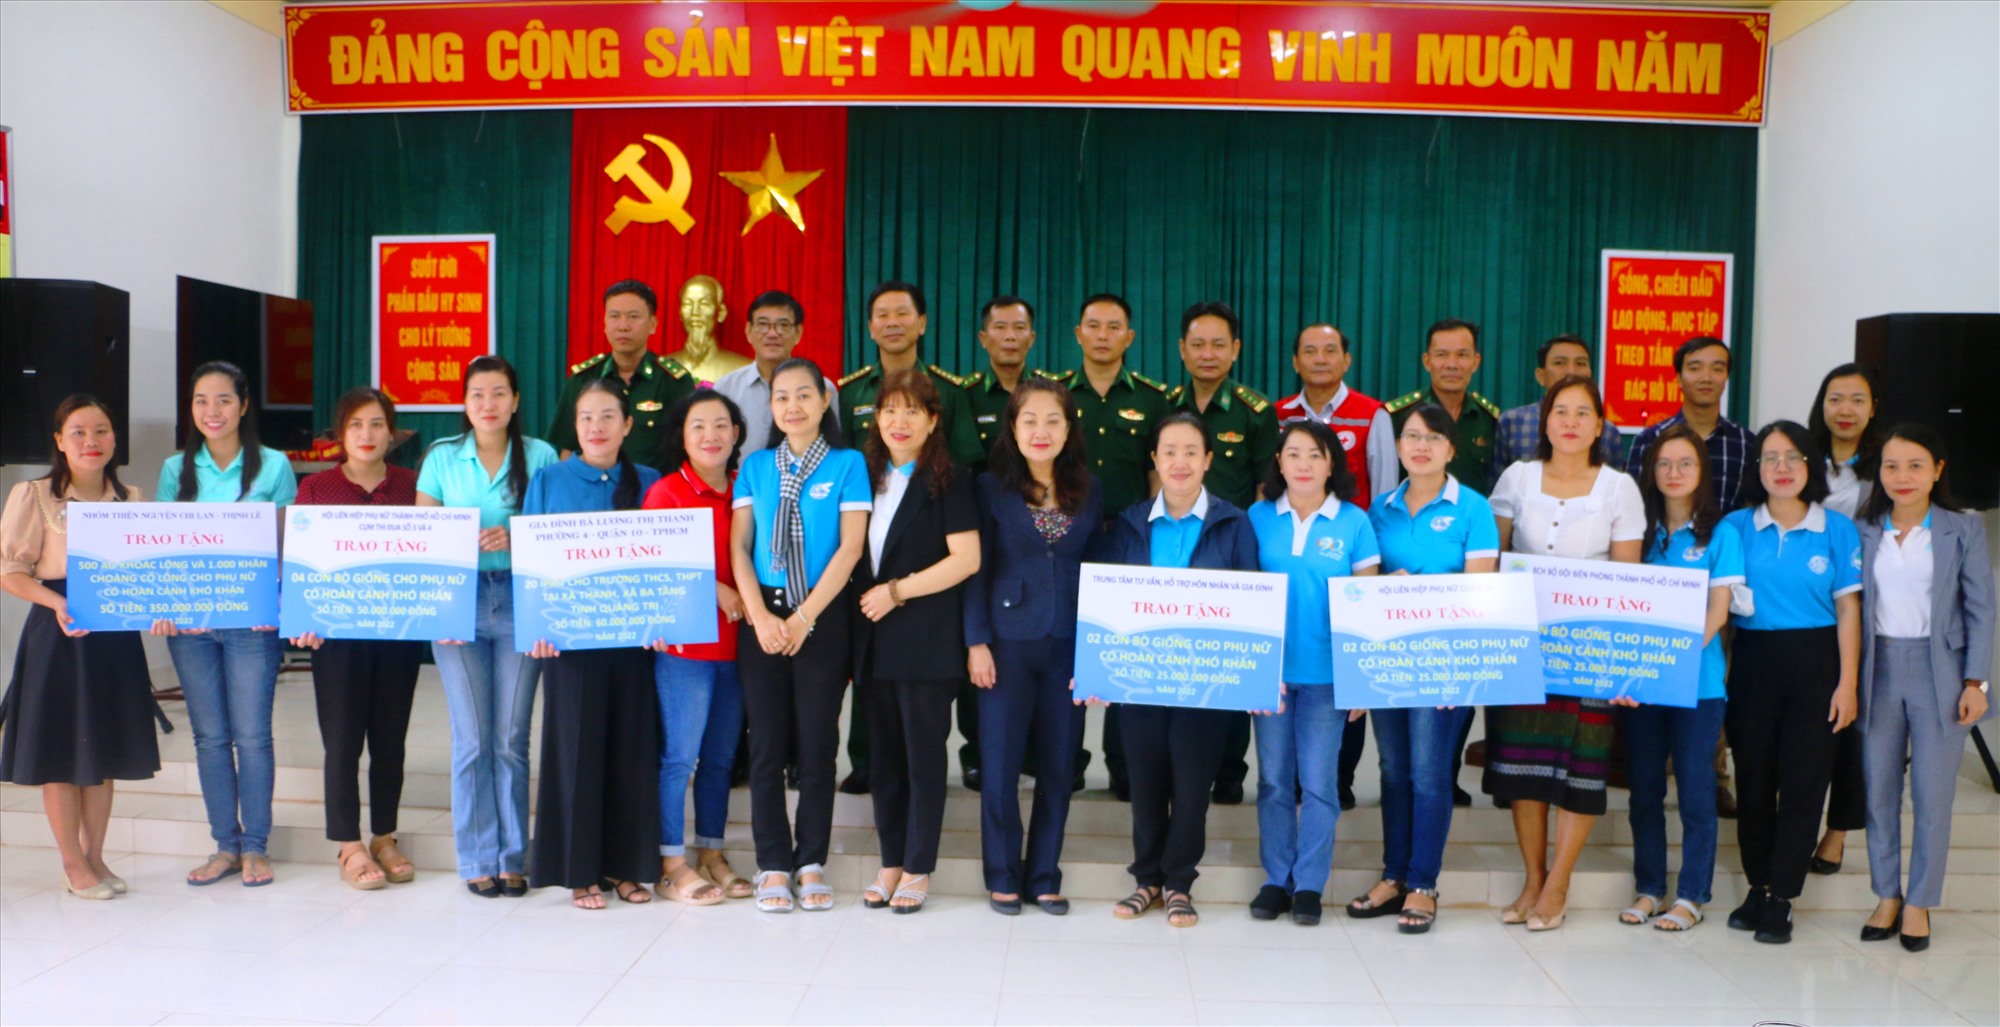 Đại diện Hội LHPN và BĐBP TP. Hồ Chí Minh, Hội LHPN tỉnh Quảng Trị trao tặng các phần quà cho người dân xã Ba Tầng, xã Thanh - Ảnh: ĐV